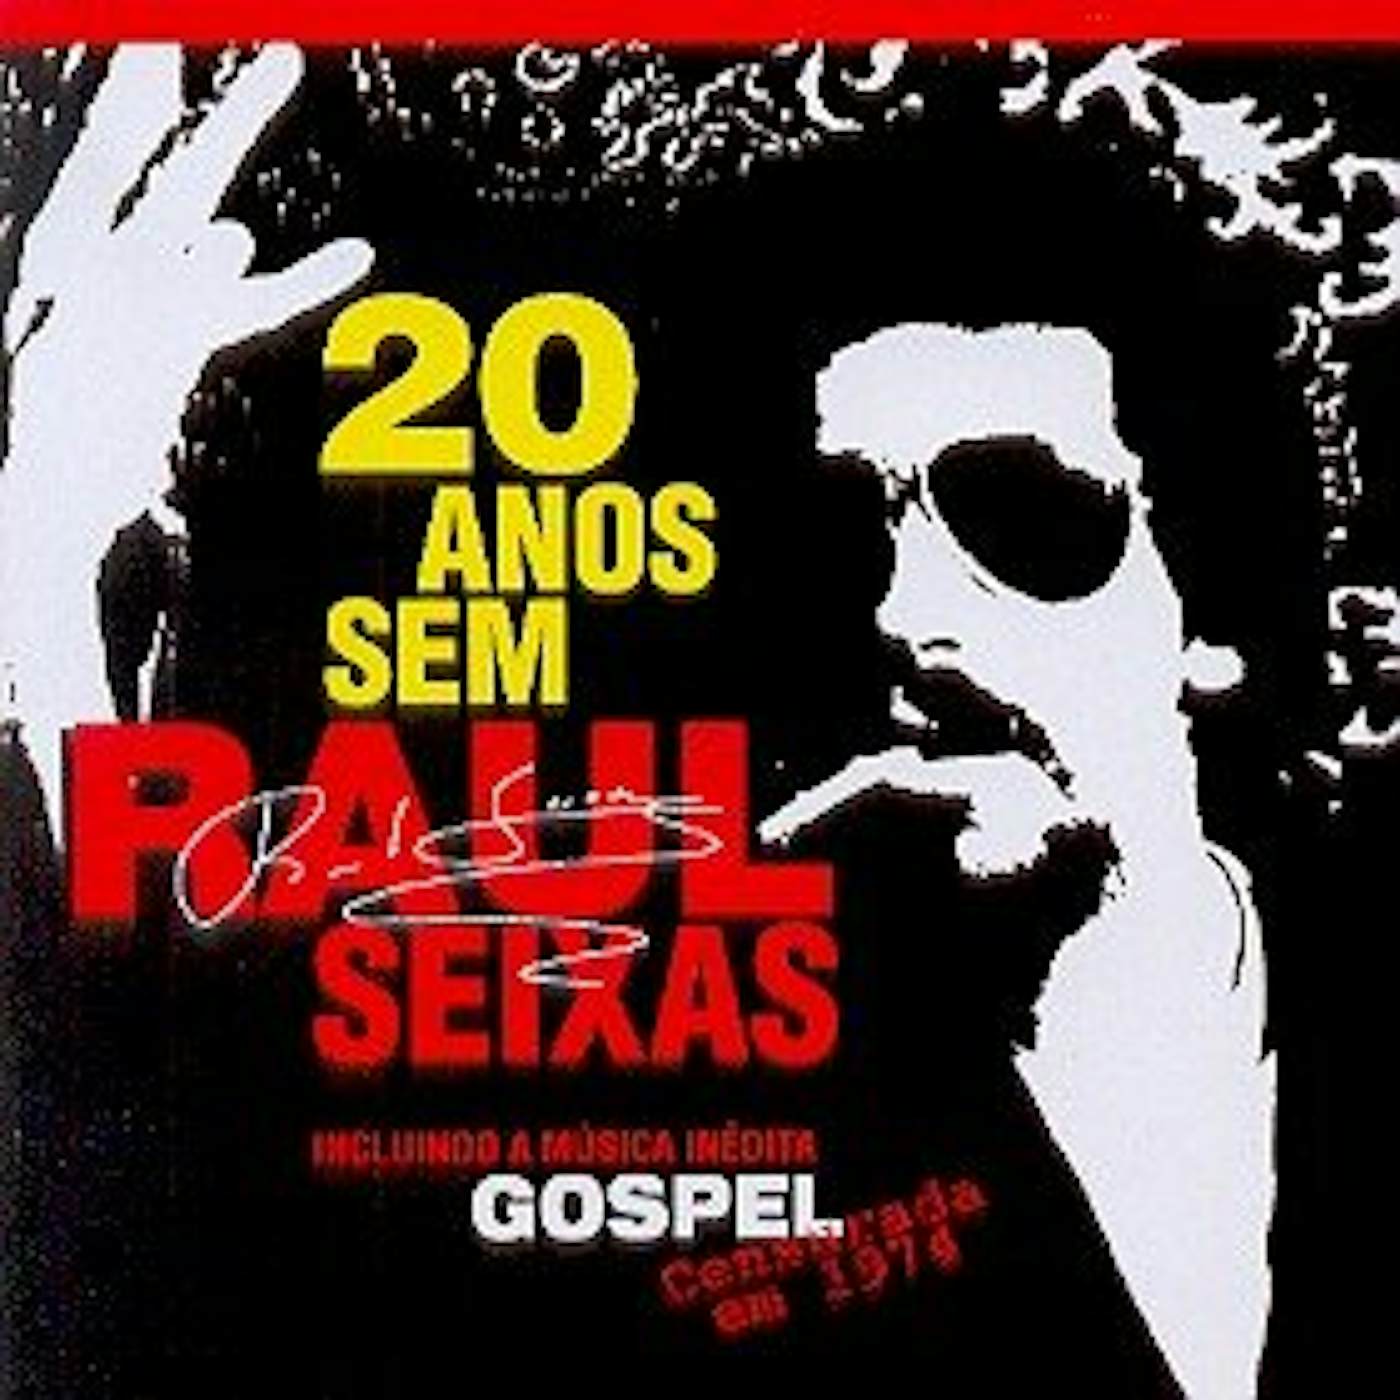 20 ANOS SEM RAUL SEIXAS CD